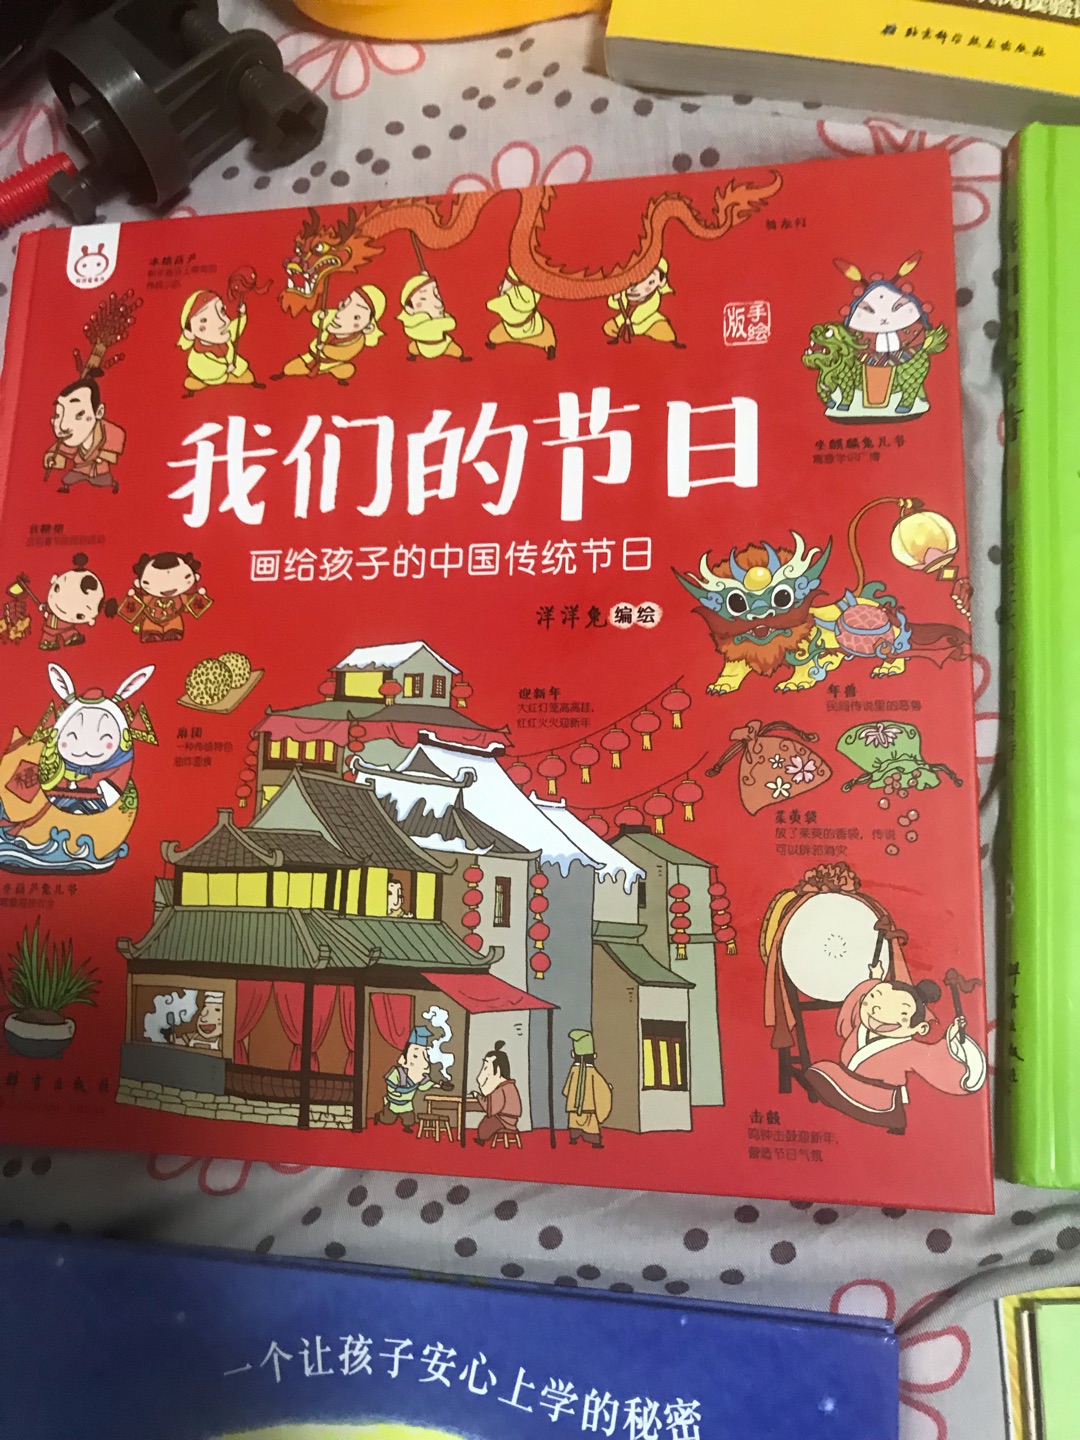 给小宝宝介绍中国的节日，挺好的。慢慢看